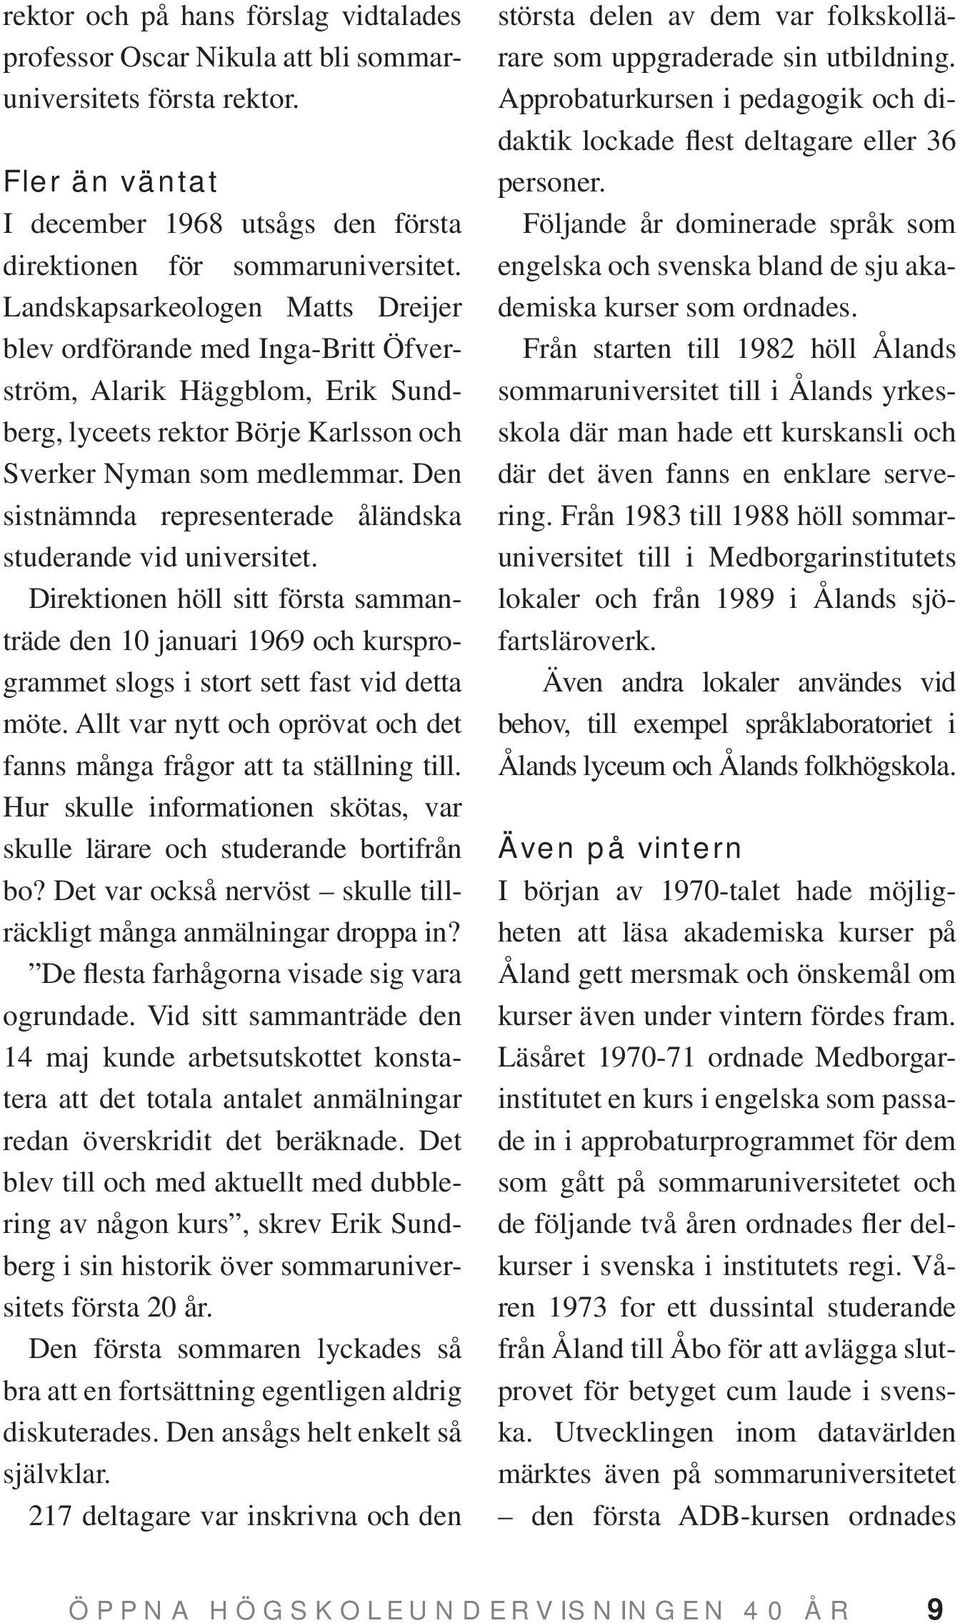 Den sistnämnda representerade åländska studerande vid universitet. Direktionen höll sitt första sammanträde den 10 januari 1969 och kursprogrammet slogs i stort sett fast vid detta möte.